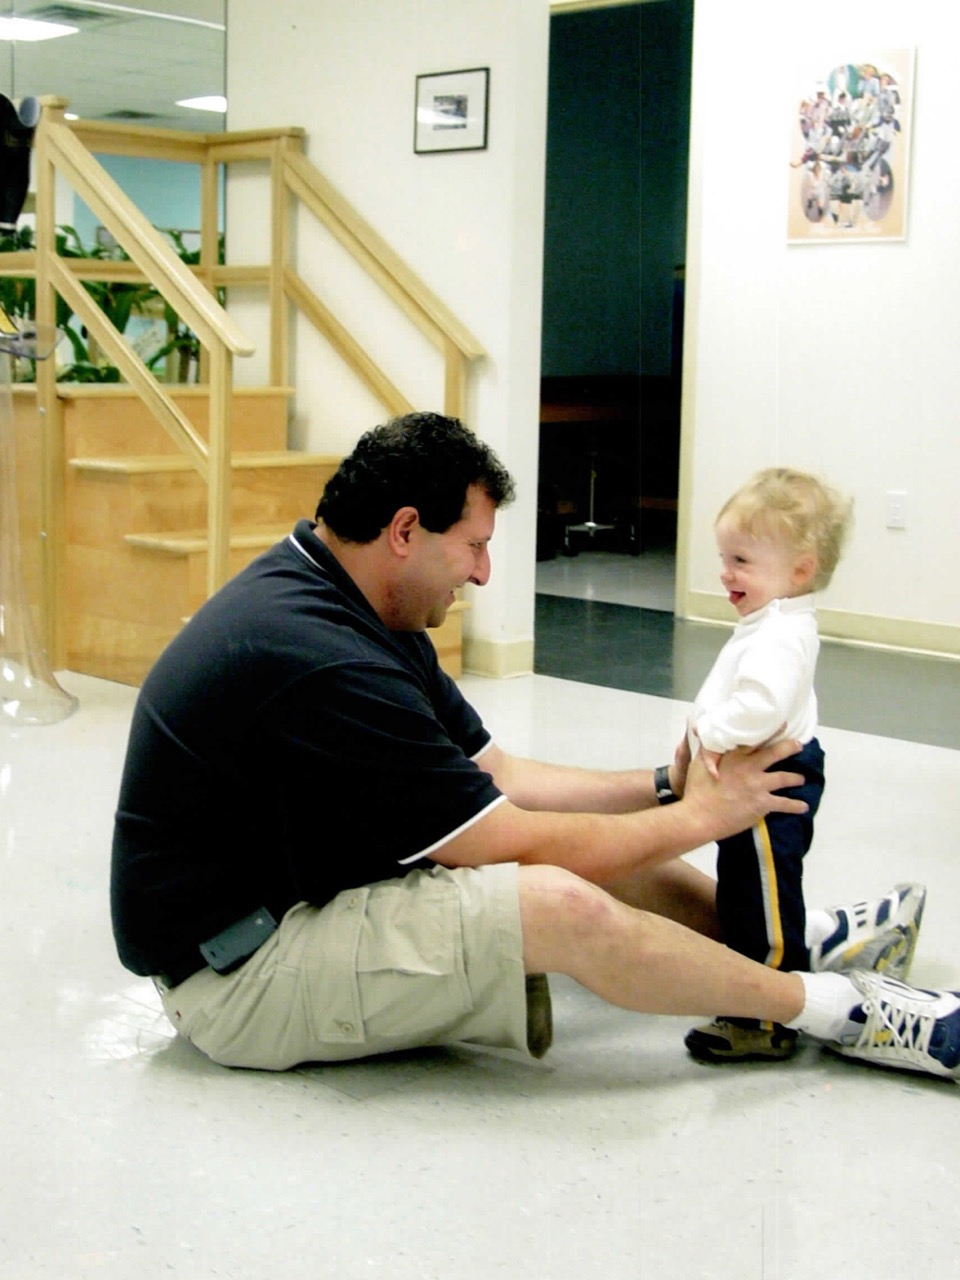 Pediatric amputee using prosthetics 